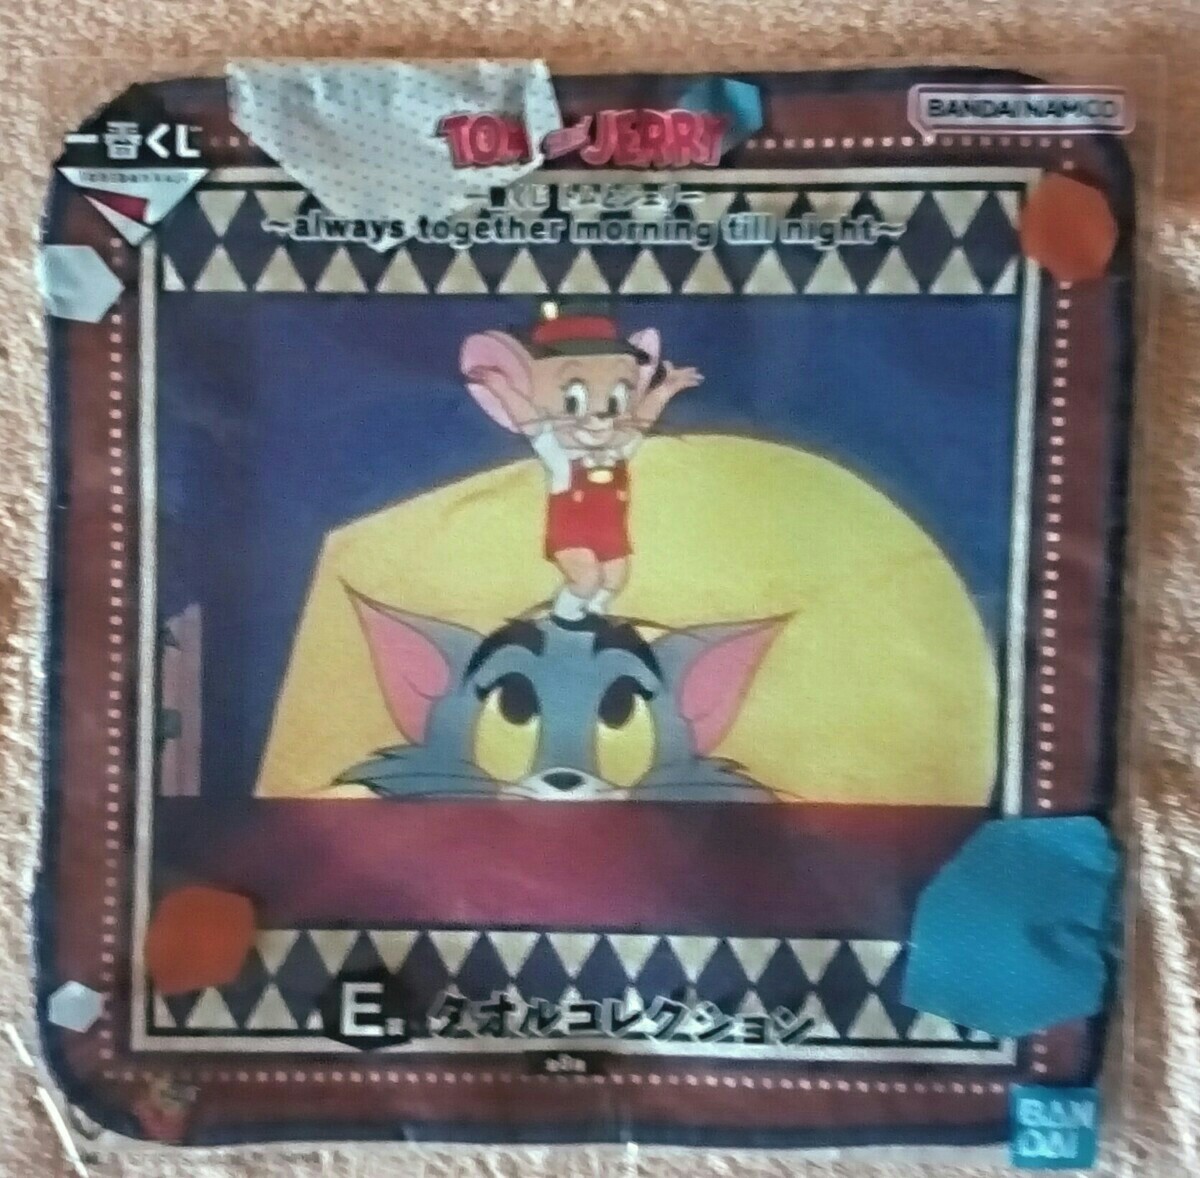 BANDAI. самый жребий Tom . Jerry. E. полотенце коллекция 2 позиций комплект подарок для не продается 